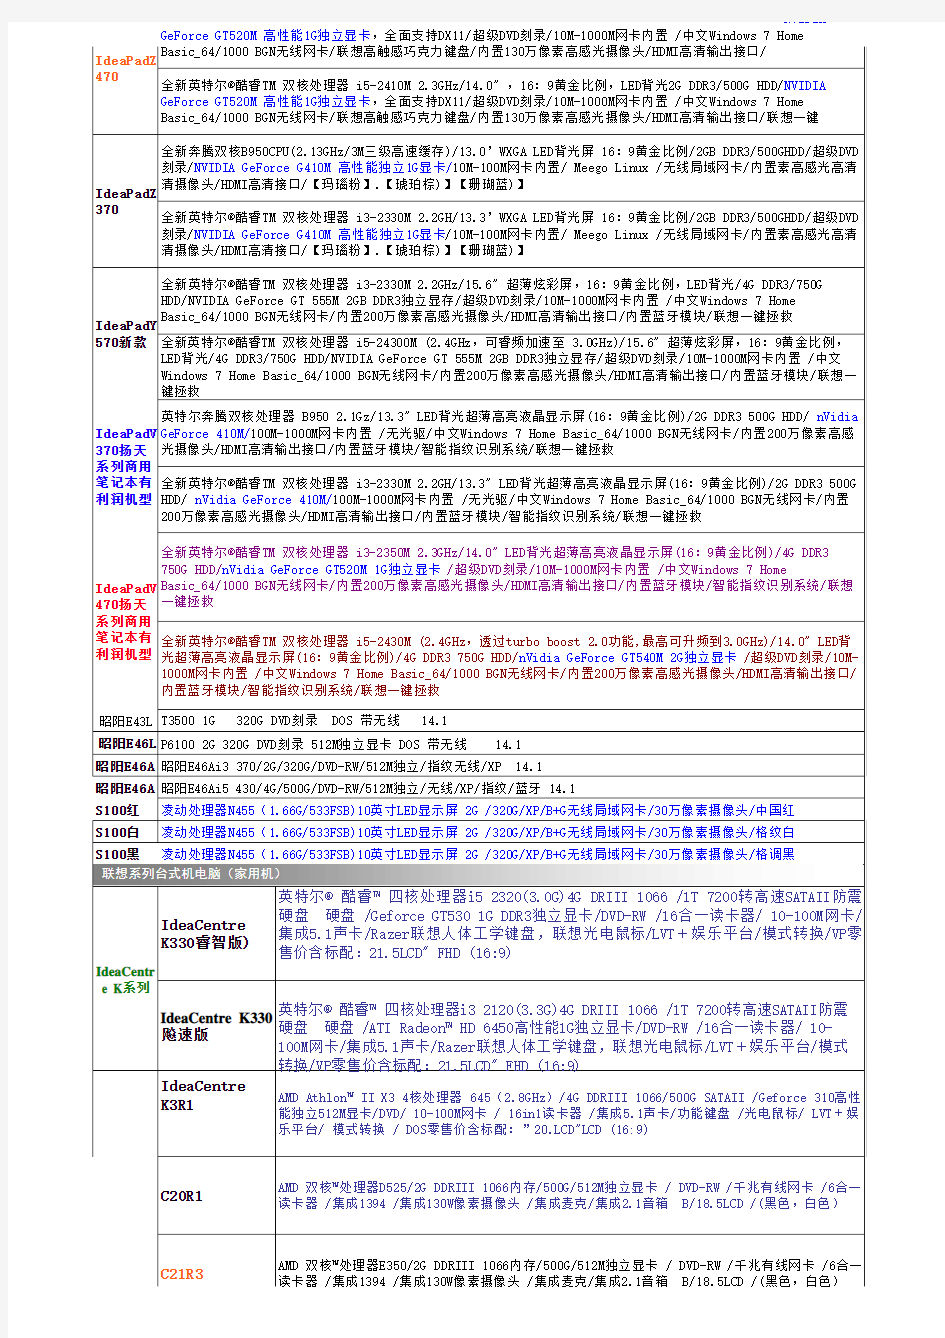 联想电脑渠道报价2011-11.18 (version 1)